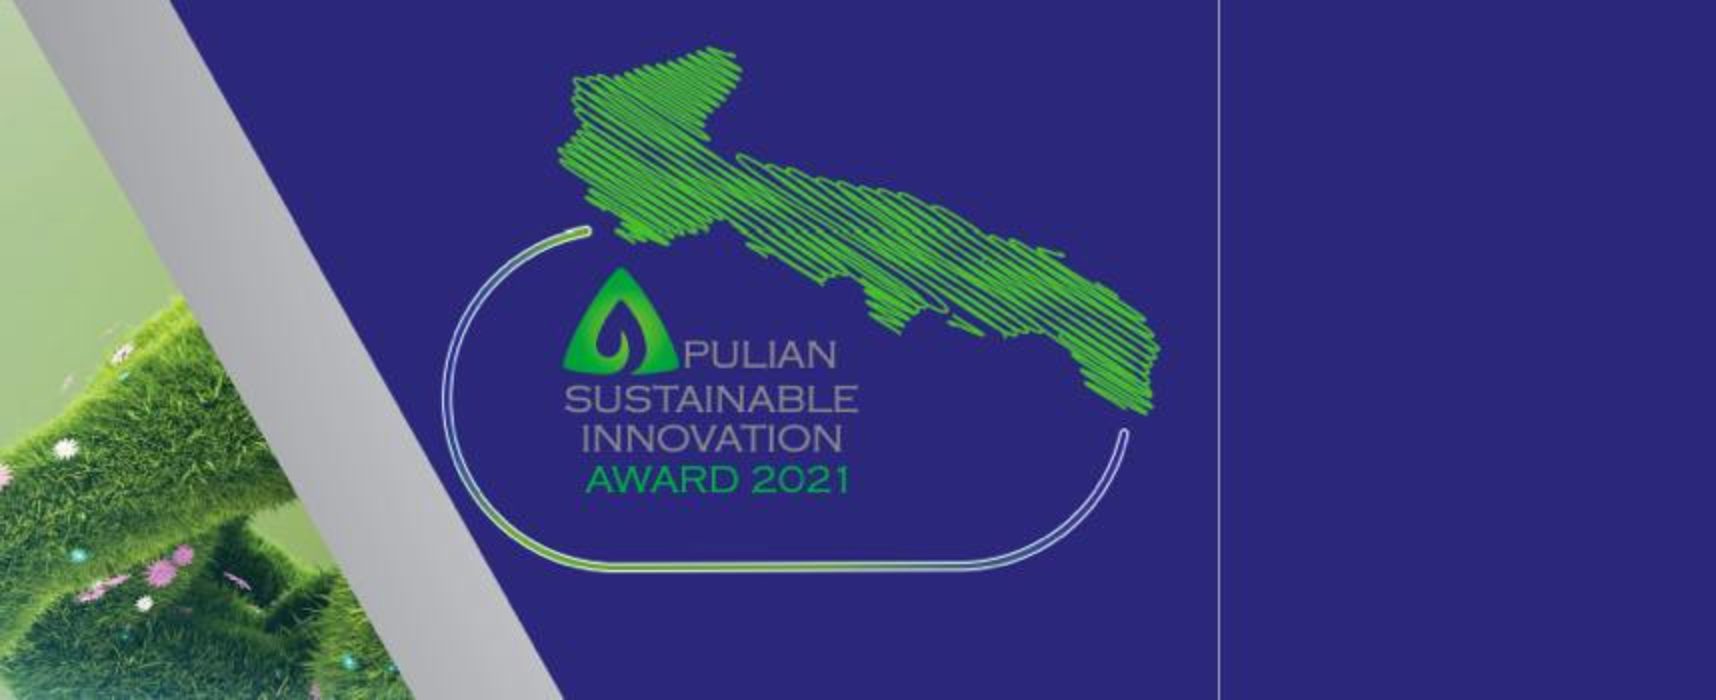 Apulian Sustainable Innovation Award, un premio destinato alle imprese ecosostenibili